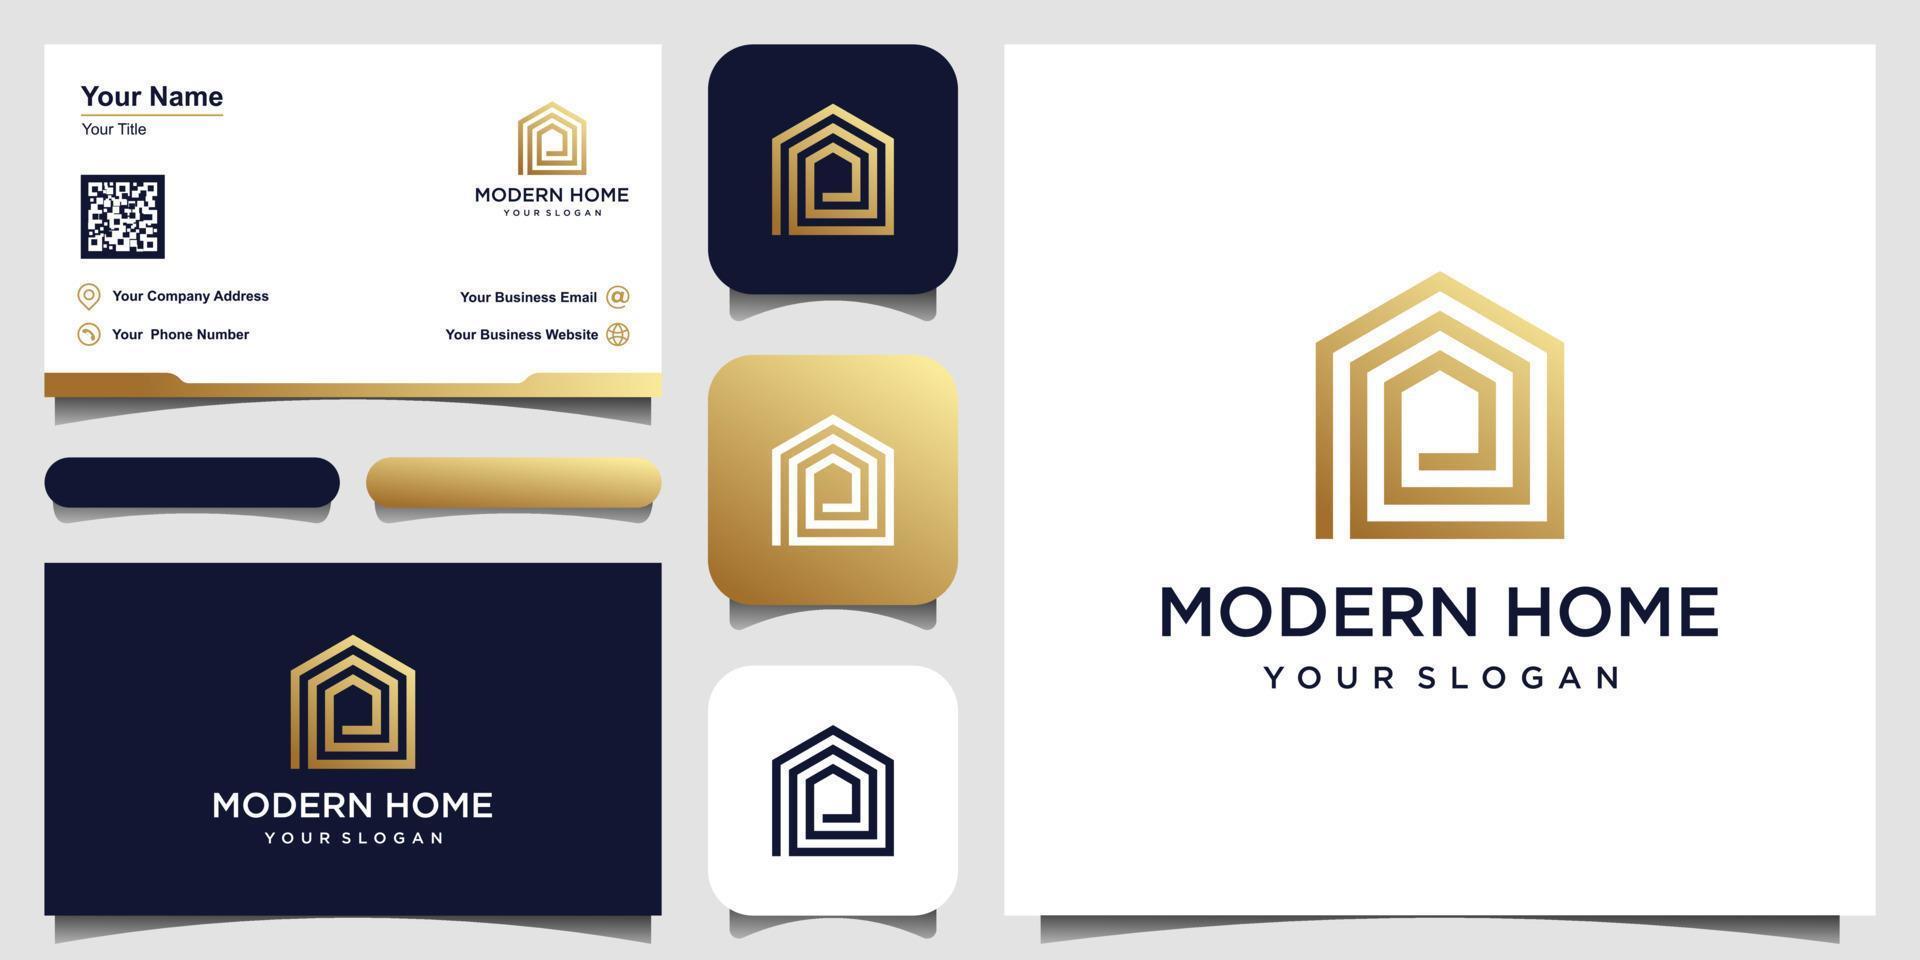 logo moderno hogar vector para construcción, hogar, bienes raíces, edificio, propiedad. plantilla de diseño de logotipo profesional de moda impresionante mínima y diseño de tarjeta de visita